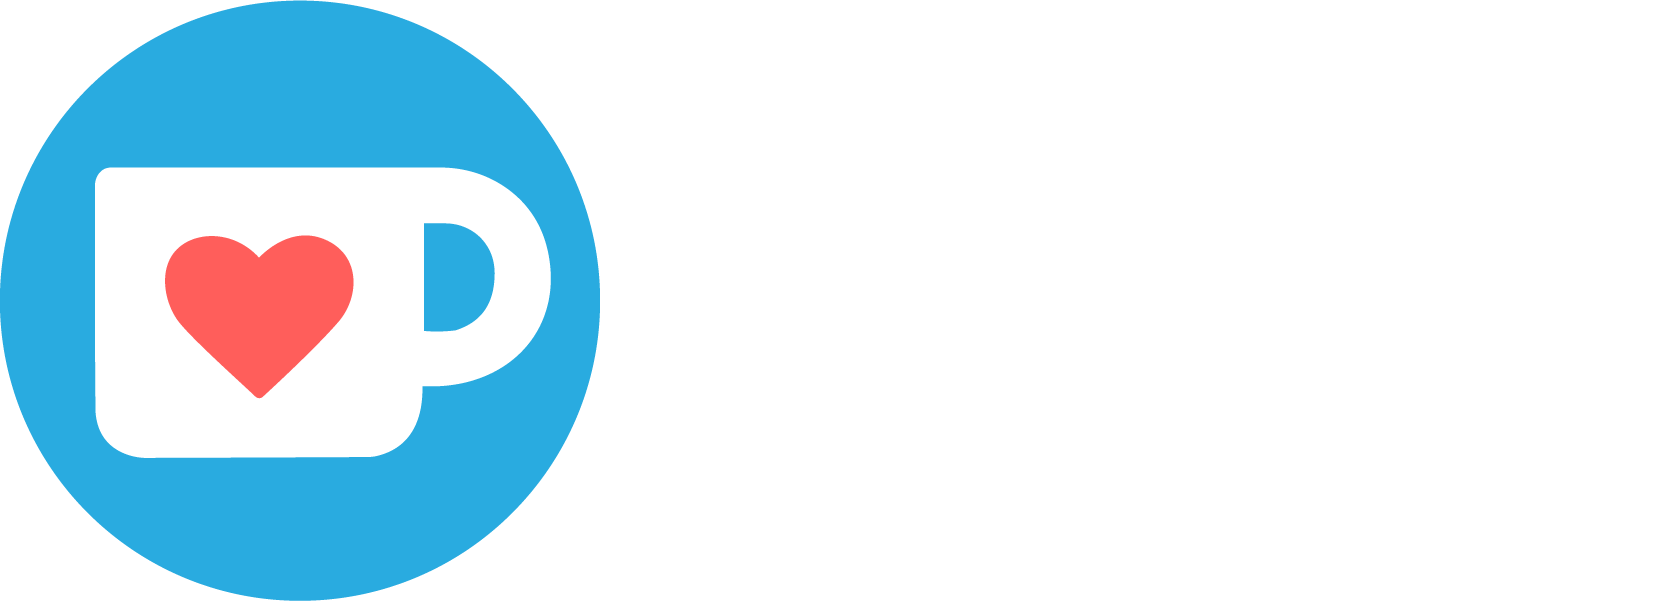 Logo du site Ko-fi.com une petite tasse mignonne avec un coeur dedans